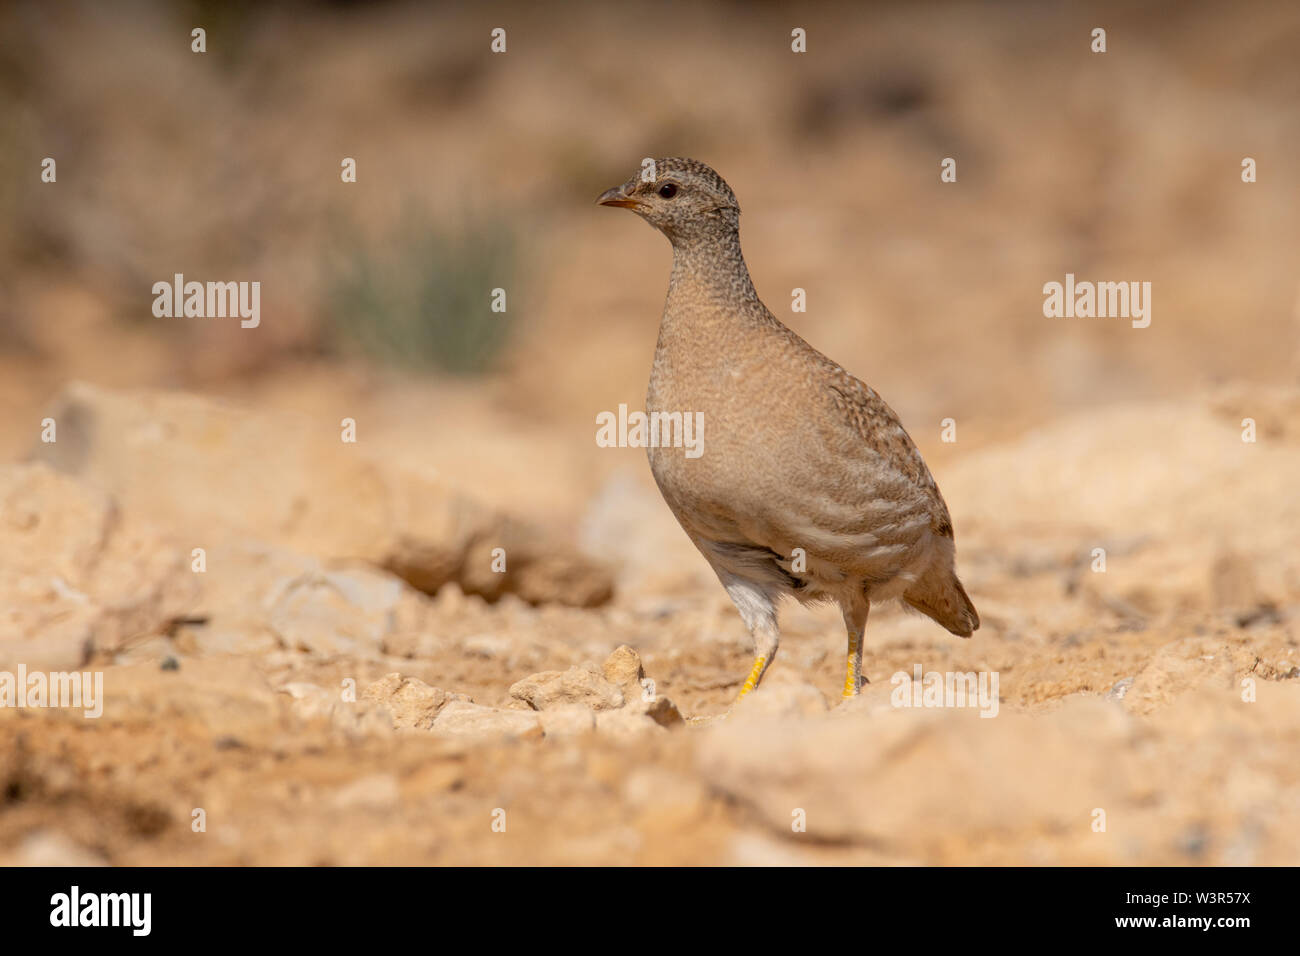 La pernice di sabbia (Ammoperdix heyi) è un gamebird nella famiglia di fagiano Phasianidae dell'ordine galliformi, uccelli gallinacei. Fotografato in Israele Foto Stock